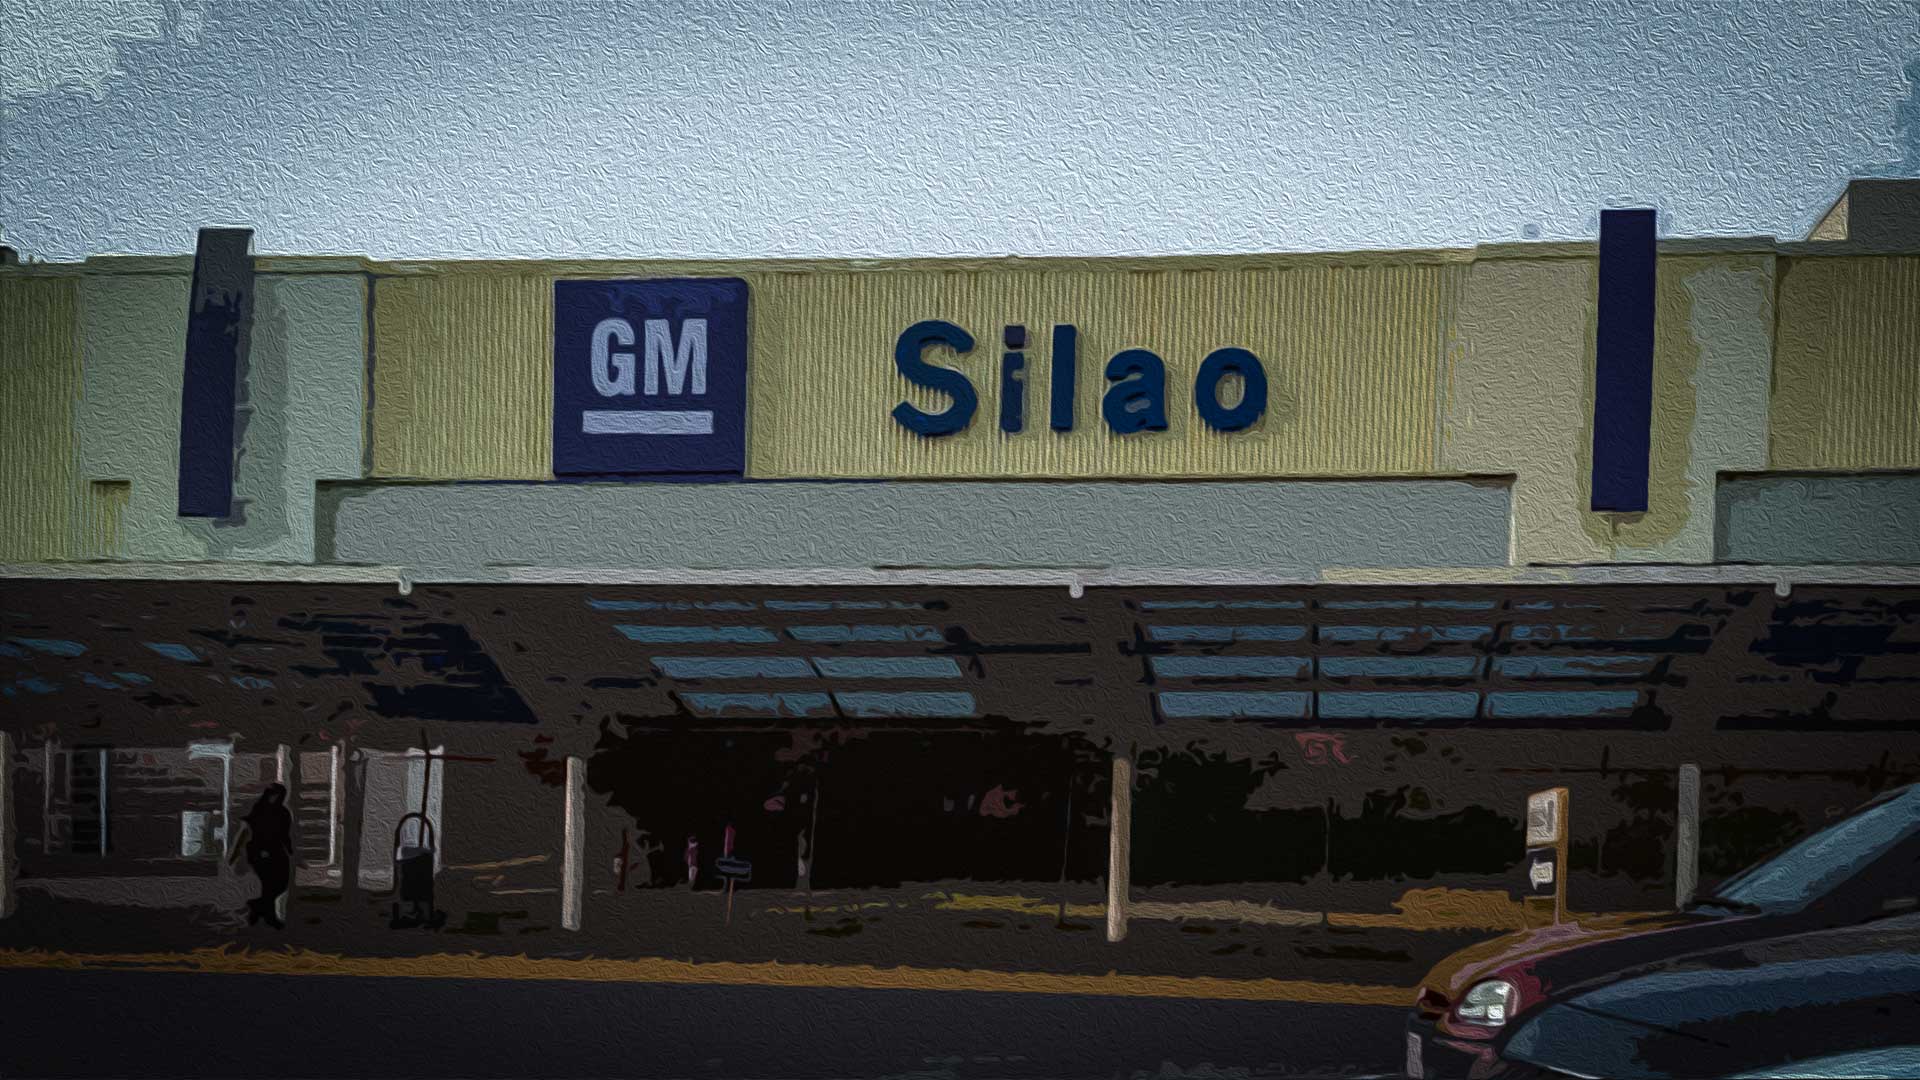 Presumen automotrices recuperación, pero GM desprotege a sus trabajadores frente al COVID (Guanajuato)